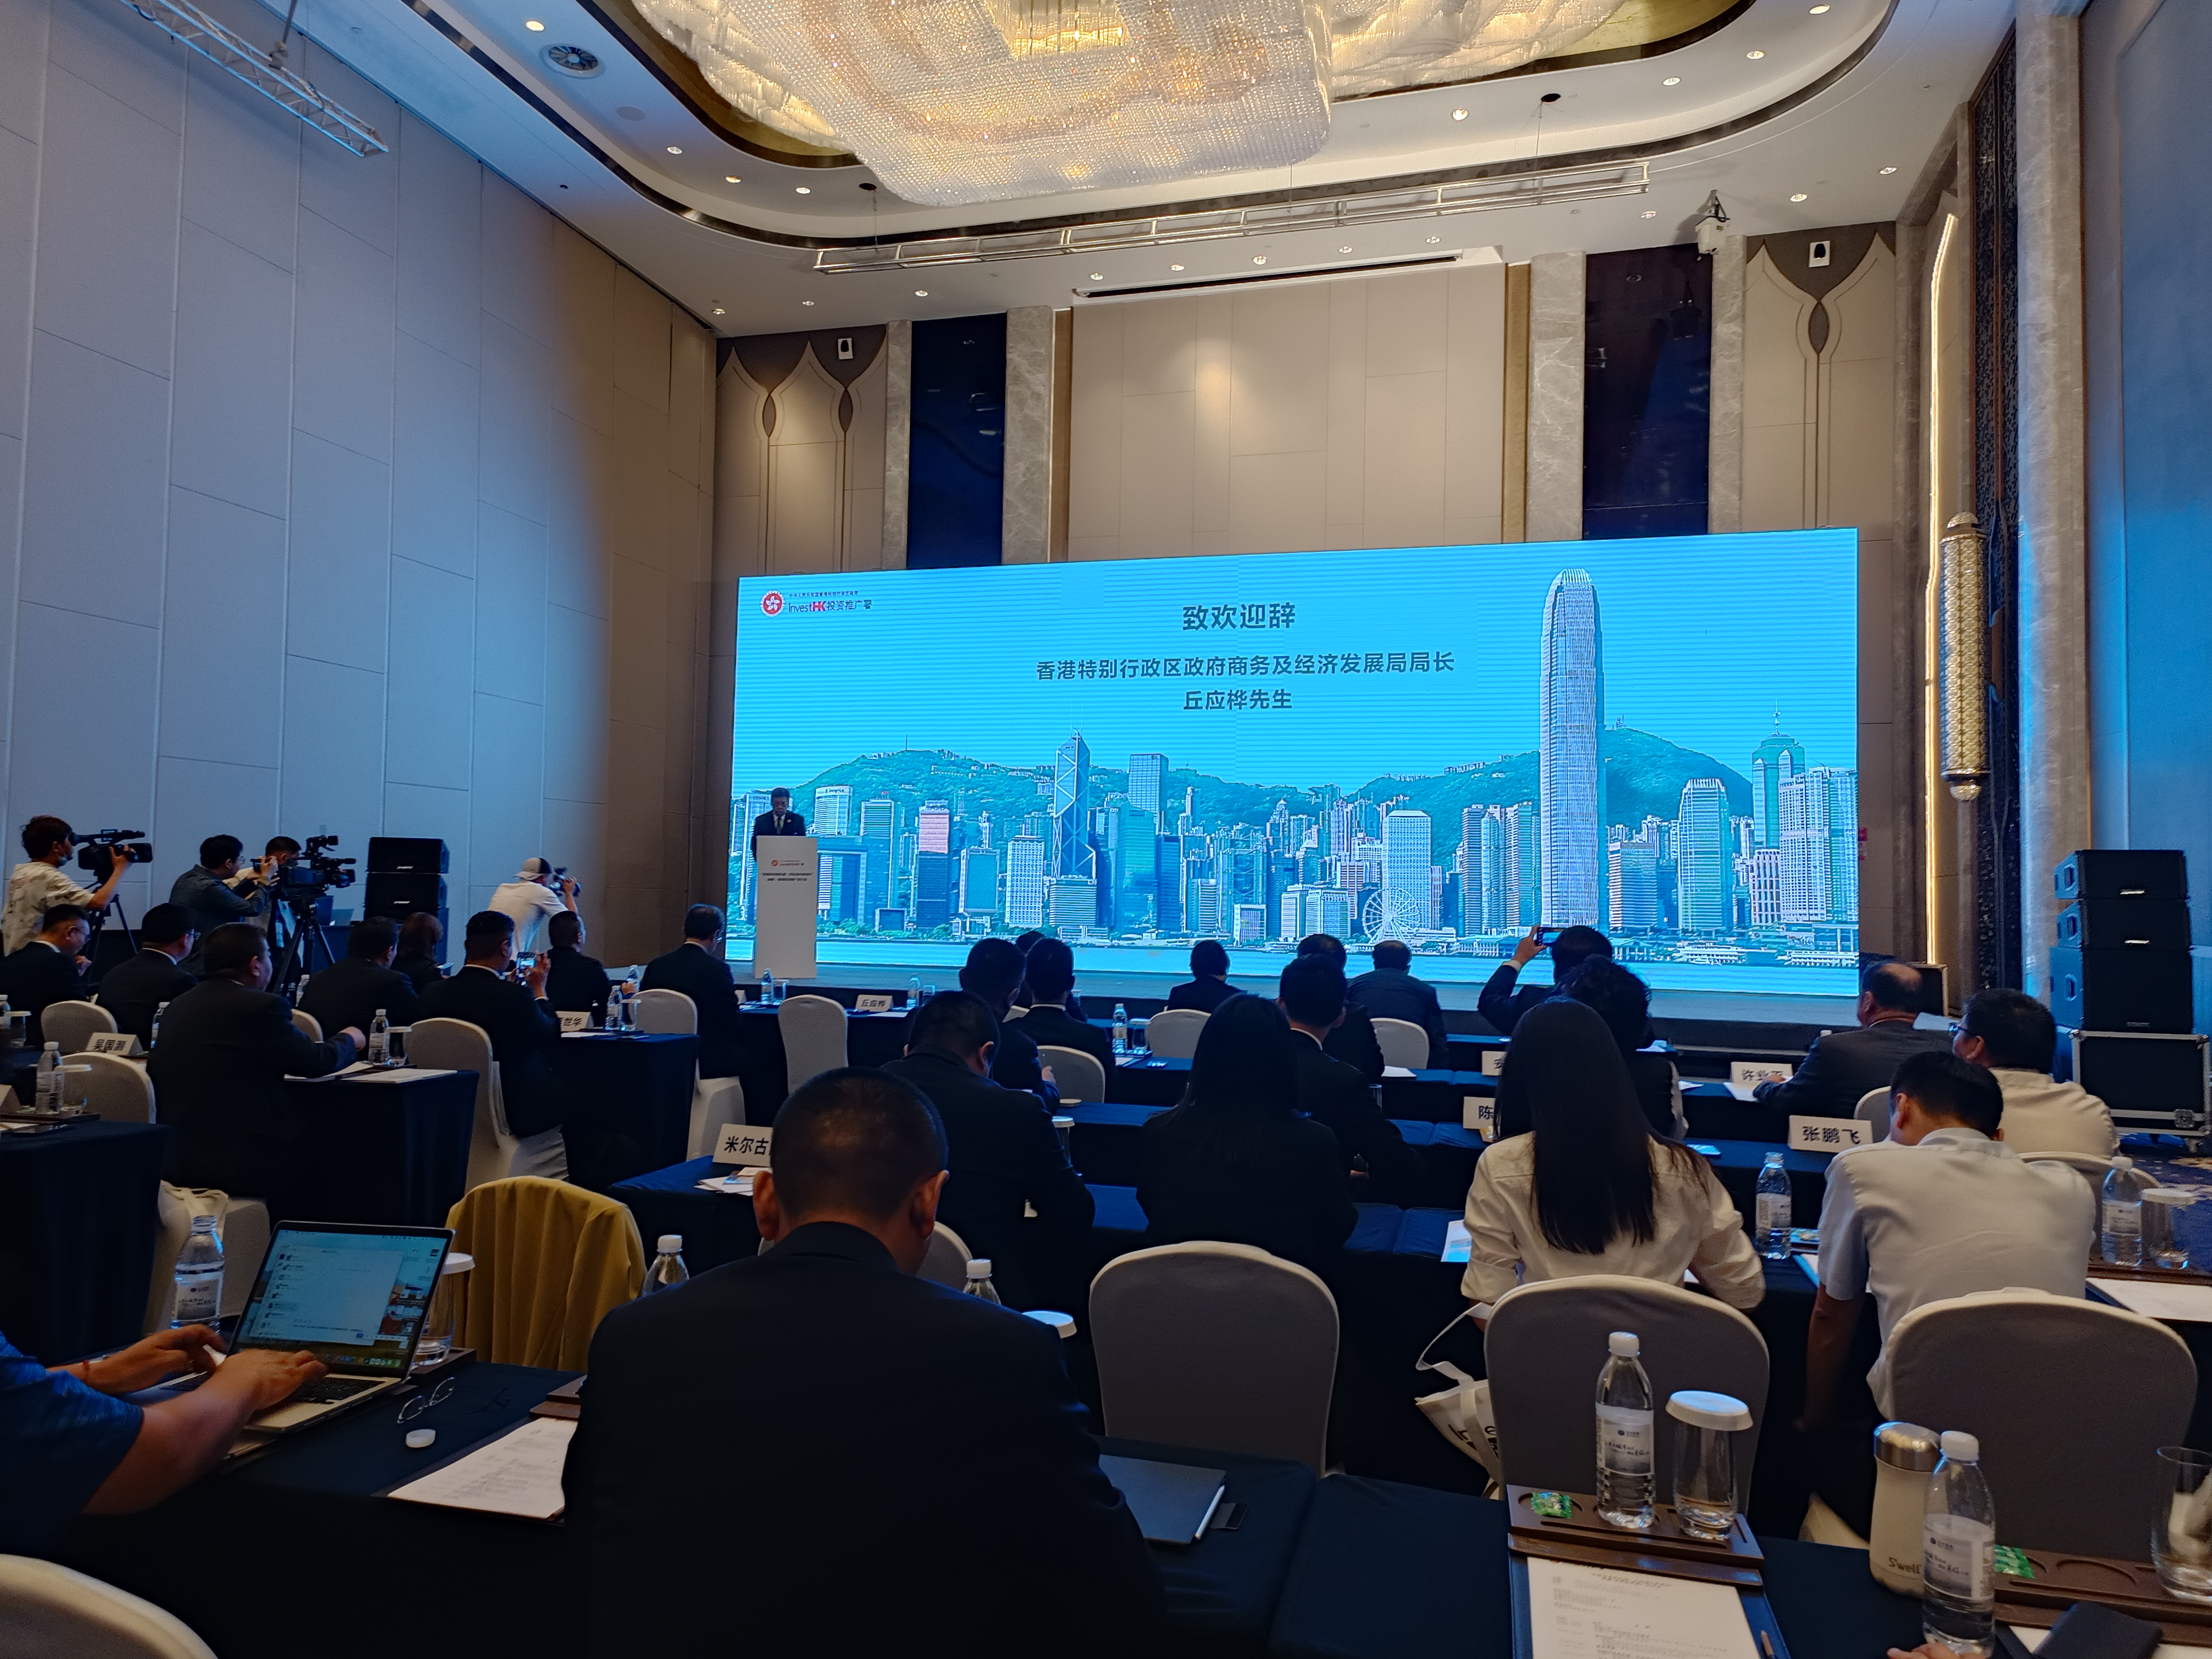 新疆 - 香港投資推廣研討會8月18日在烏魯木齊市召開